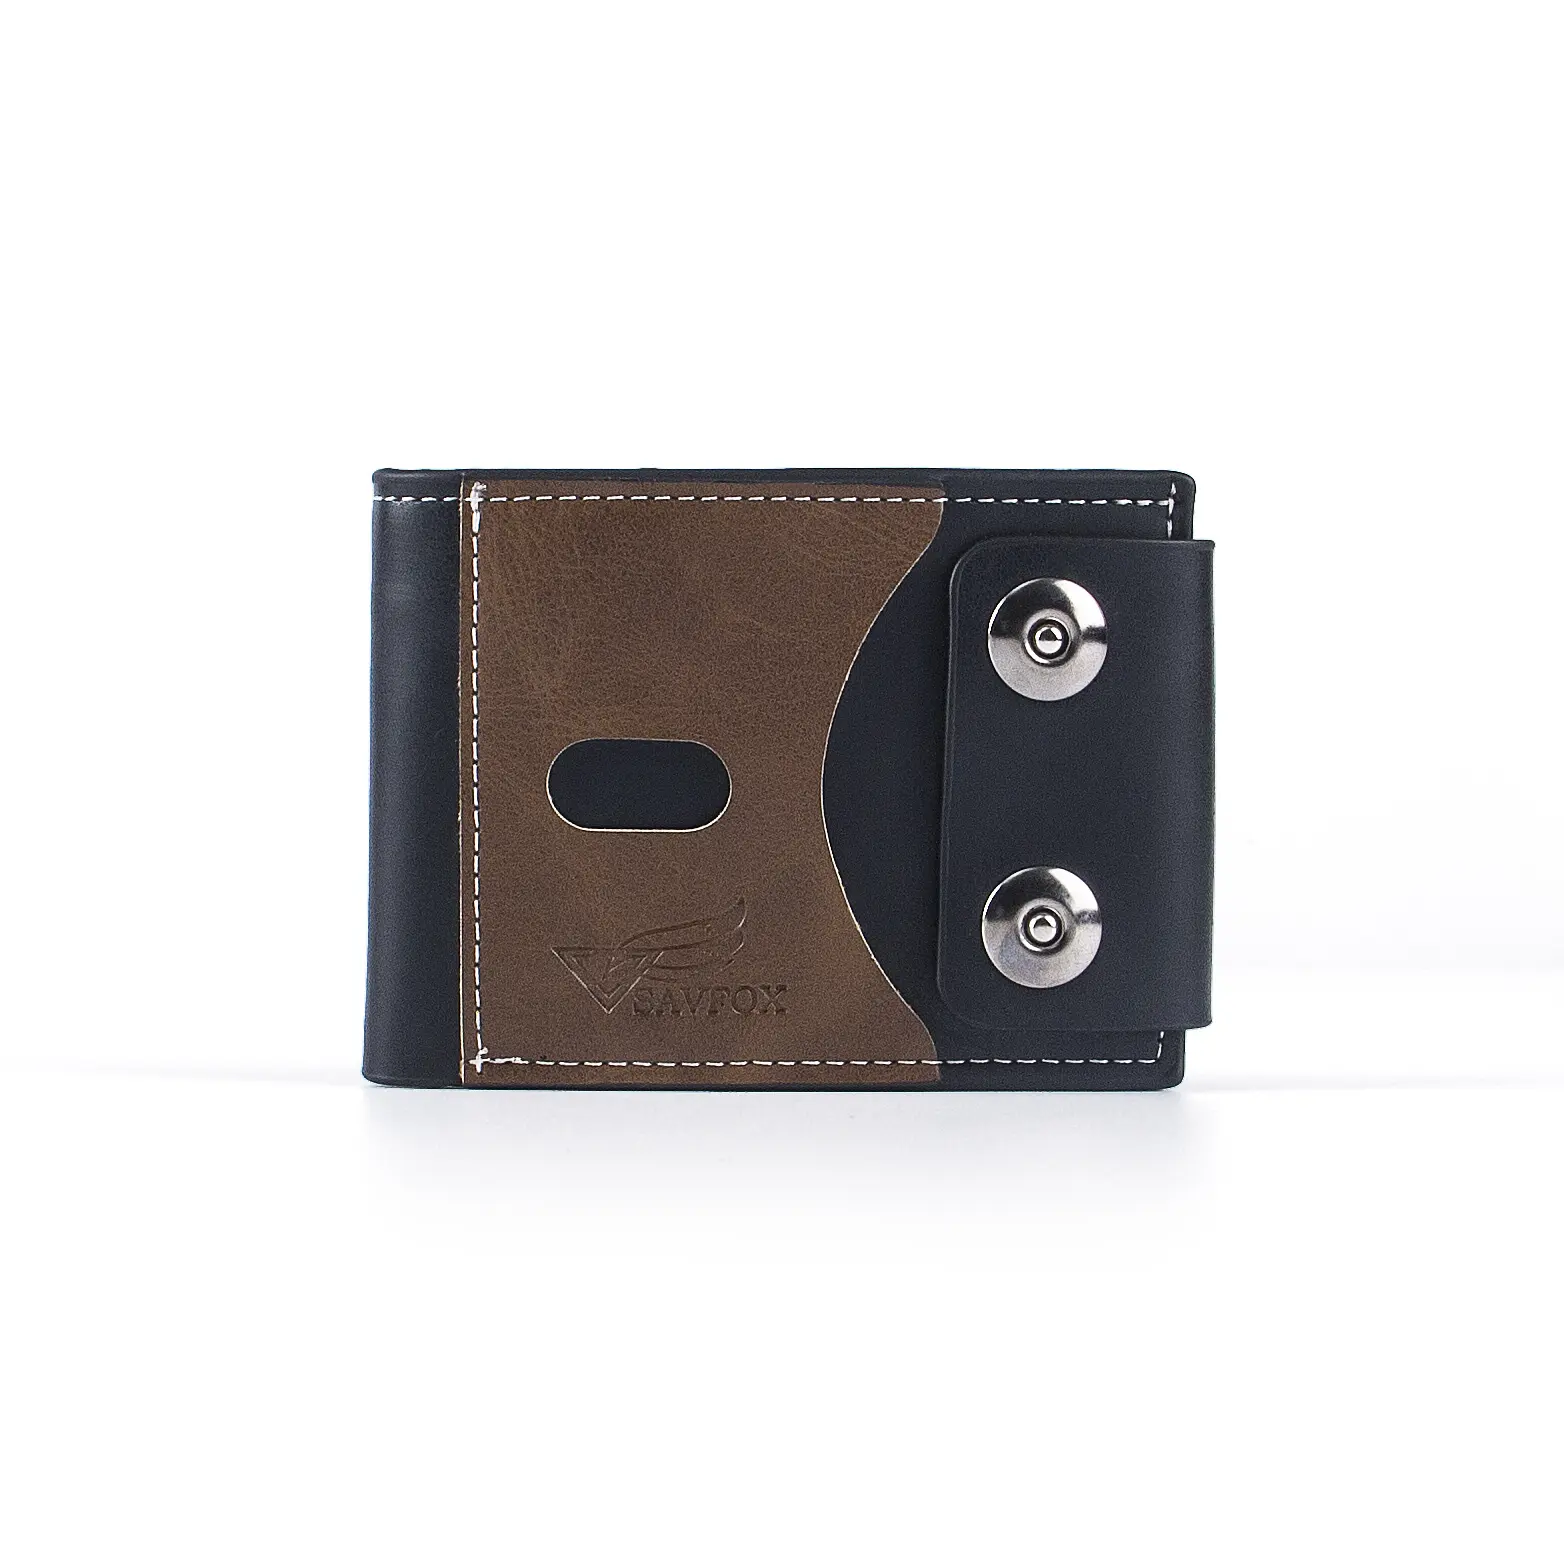 Billetera delgada de cuero sintético natural para hombre, billetera ultrafina de cuero curtido con cierre de botones